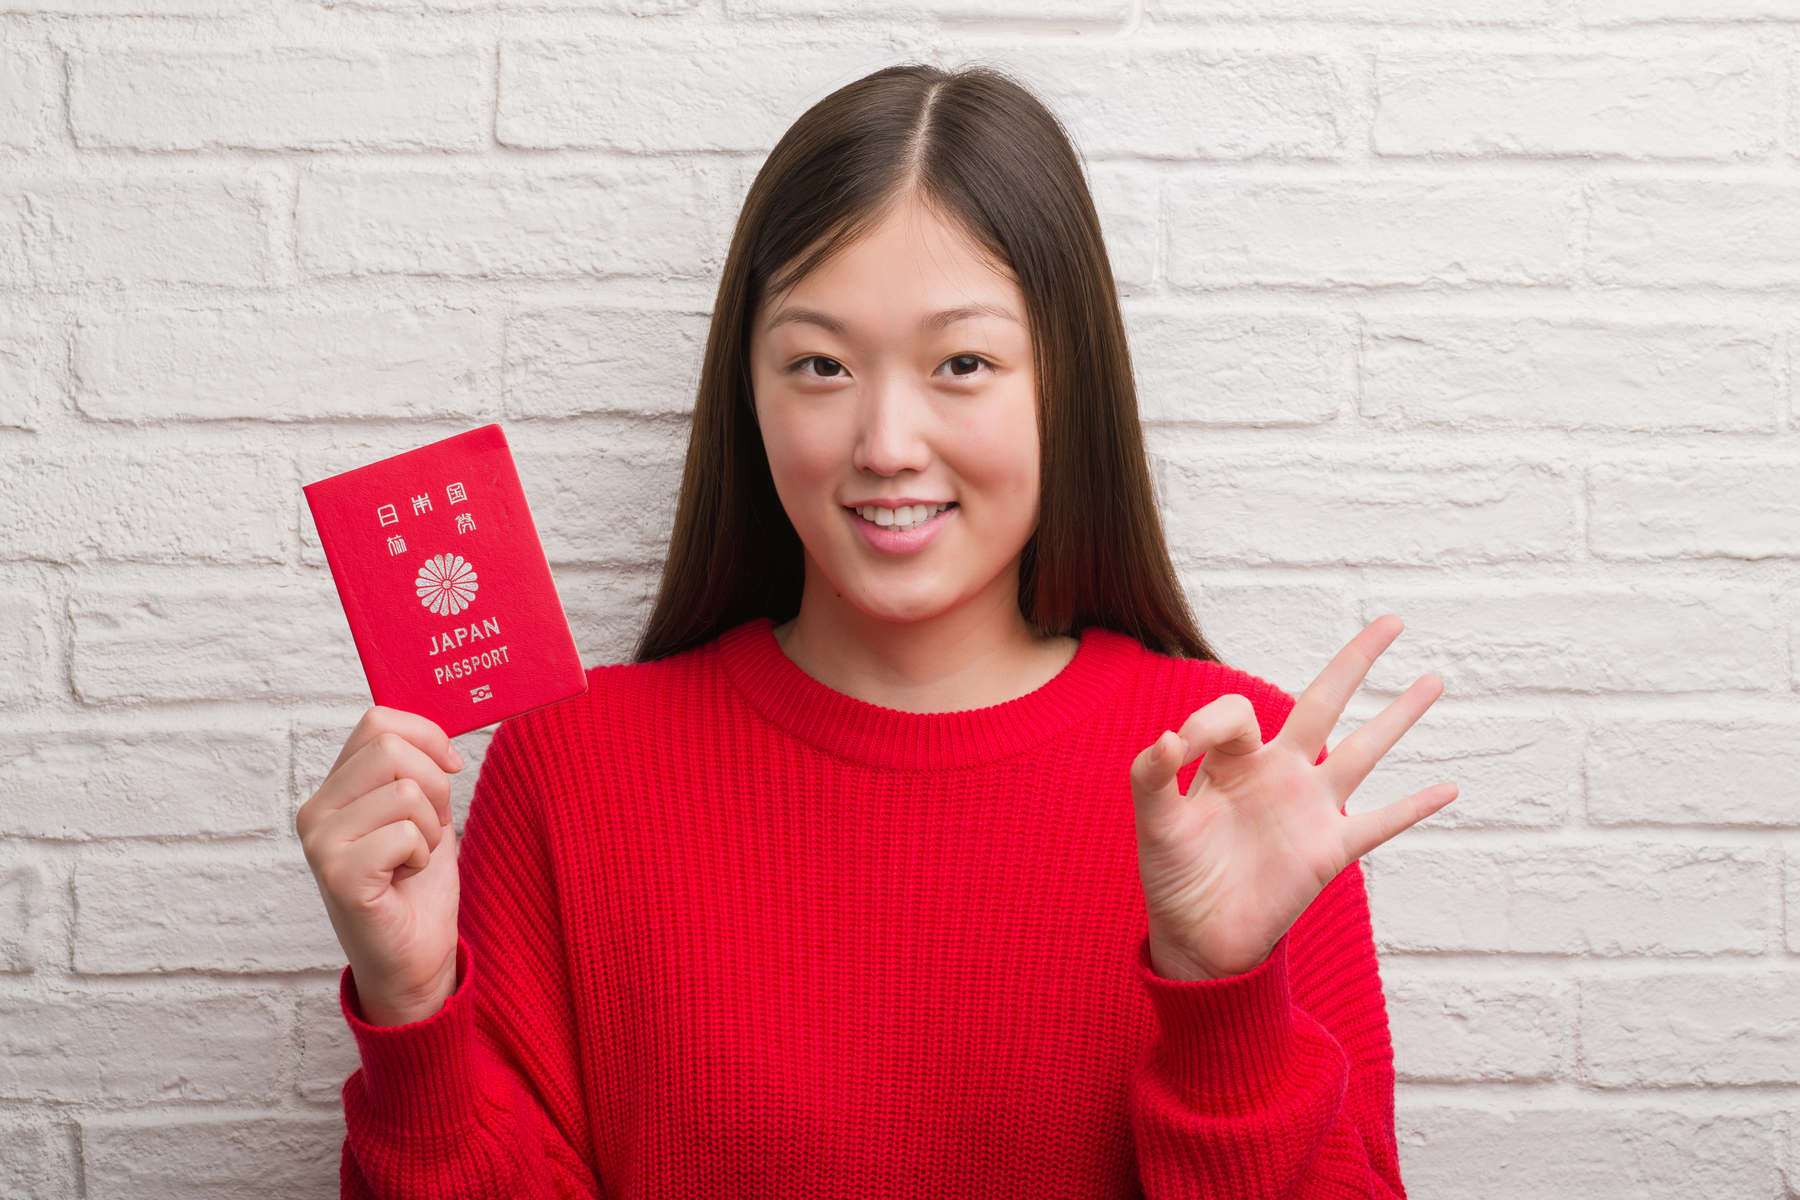 Il miglior passaporto è quello giapponese: il ceco è tra i primi sette